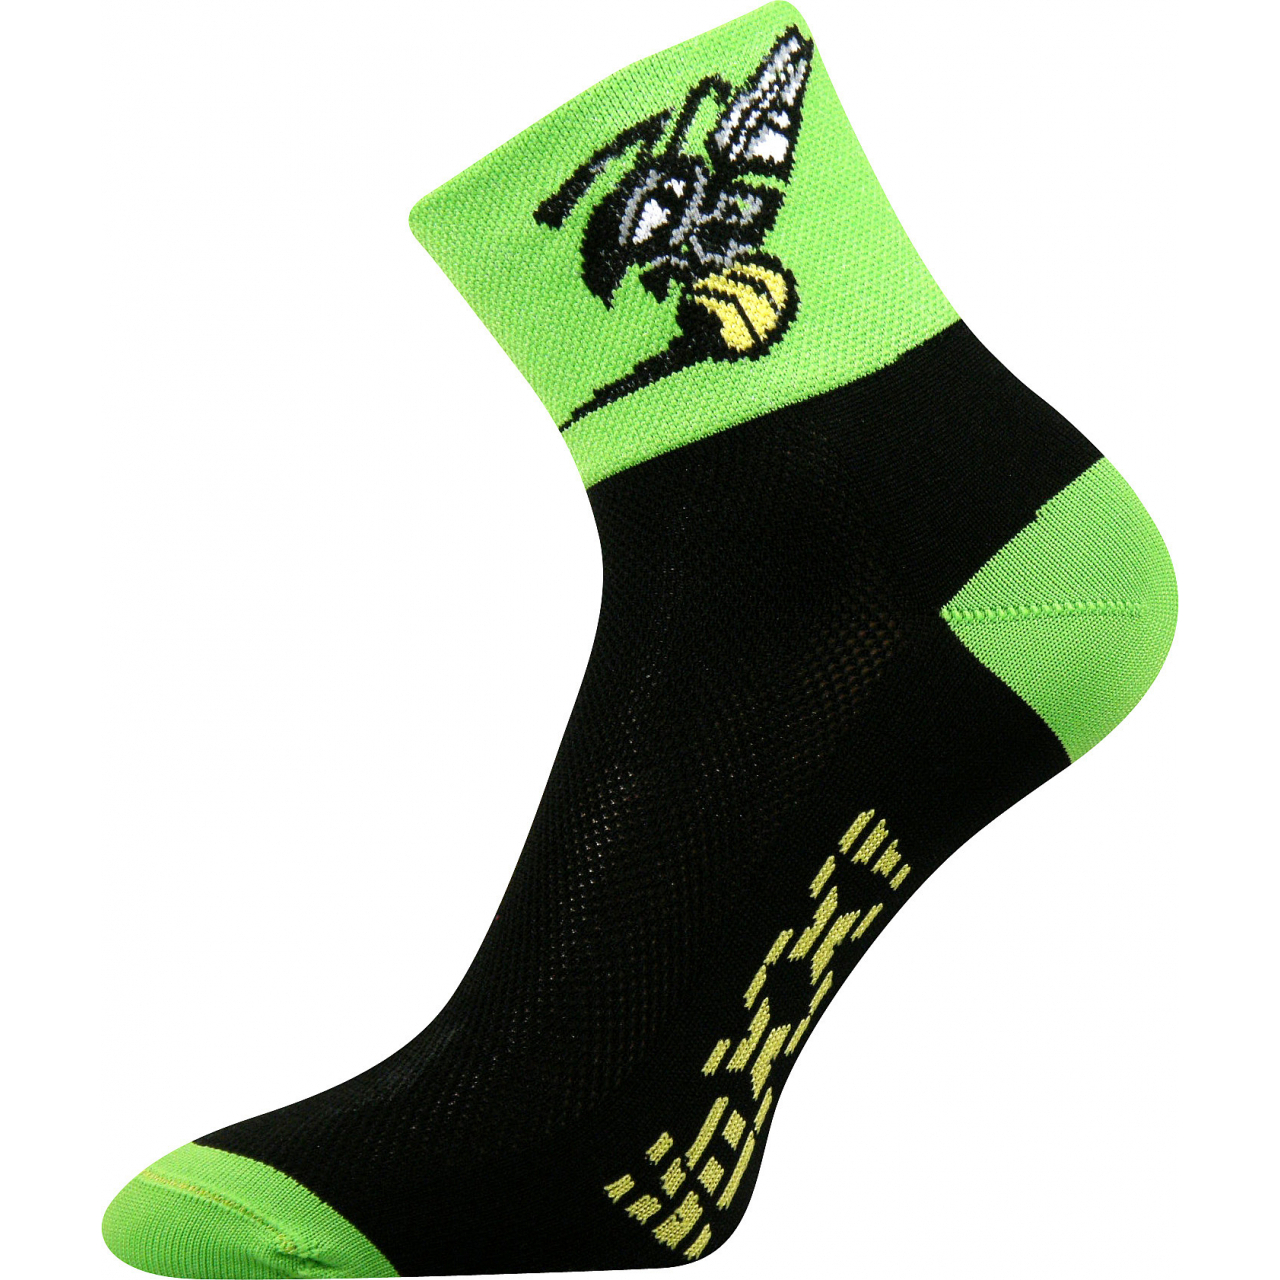 Ponožky sportovní unisex Voxx Ralf X Vosa - černé-zelené, 35-38